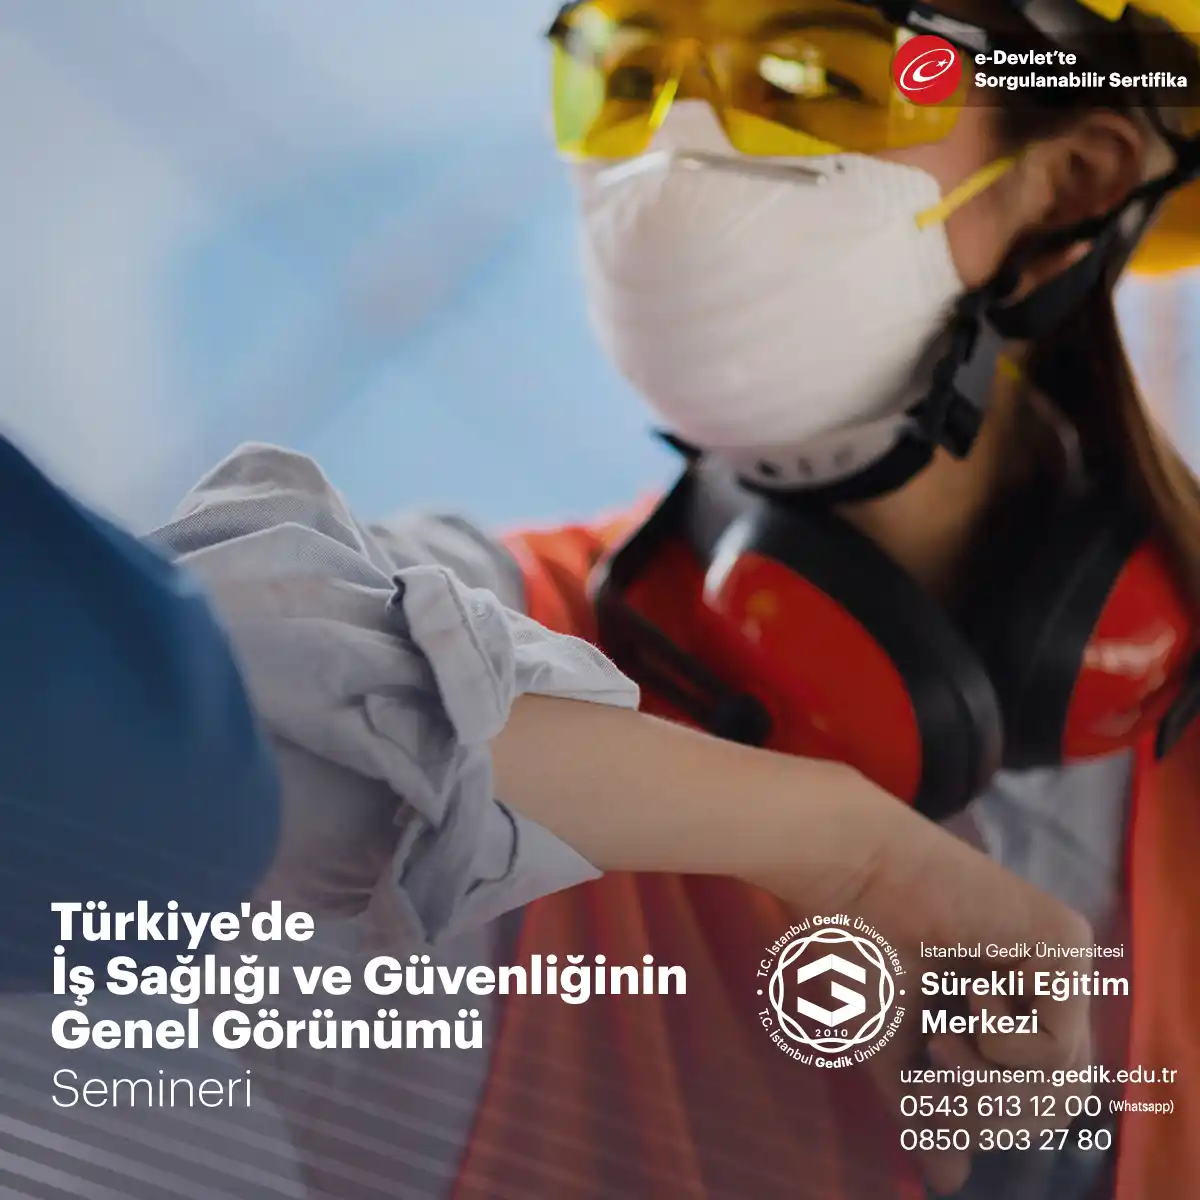 Türkiye'de iş sağlığı ve güvenliği, çalışanların sağlığını korumayı ve iş kazalarını önlemeyi amaçlayan bir dizi yasal düzenleme ve politika çerçevesinde ele alınmaktadır.